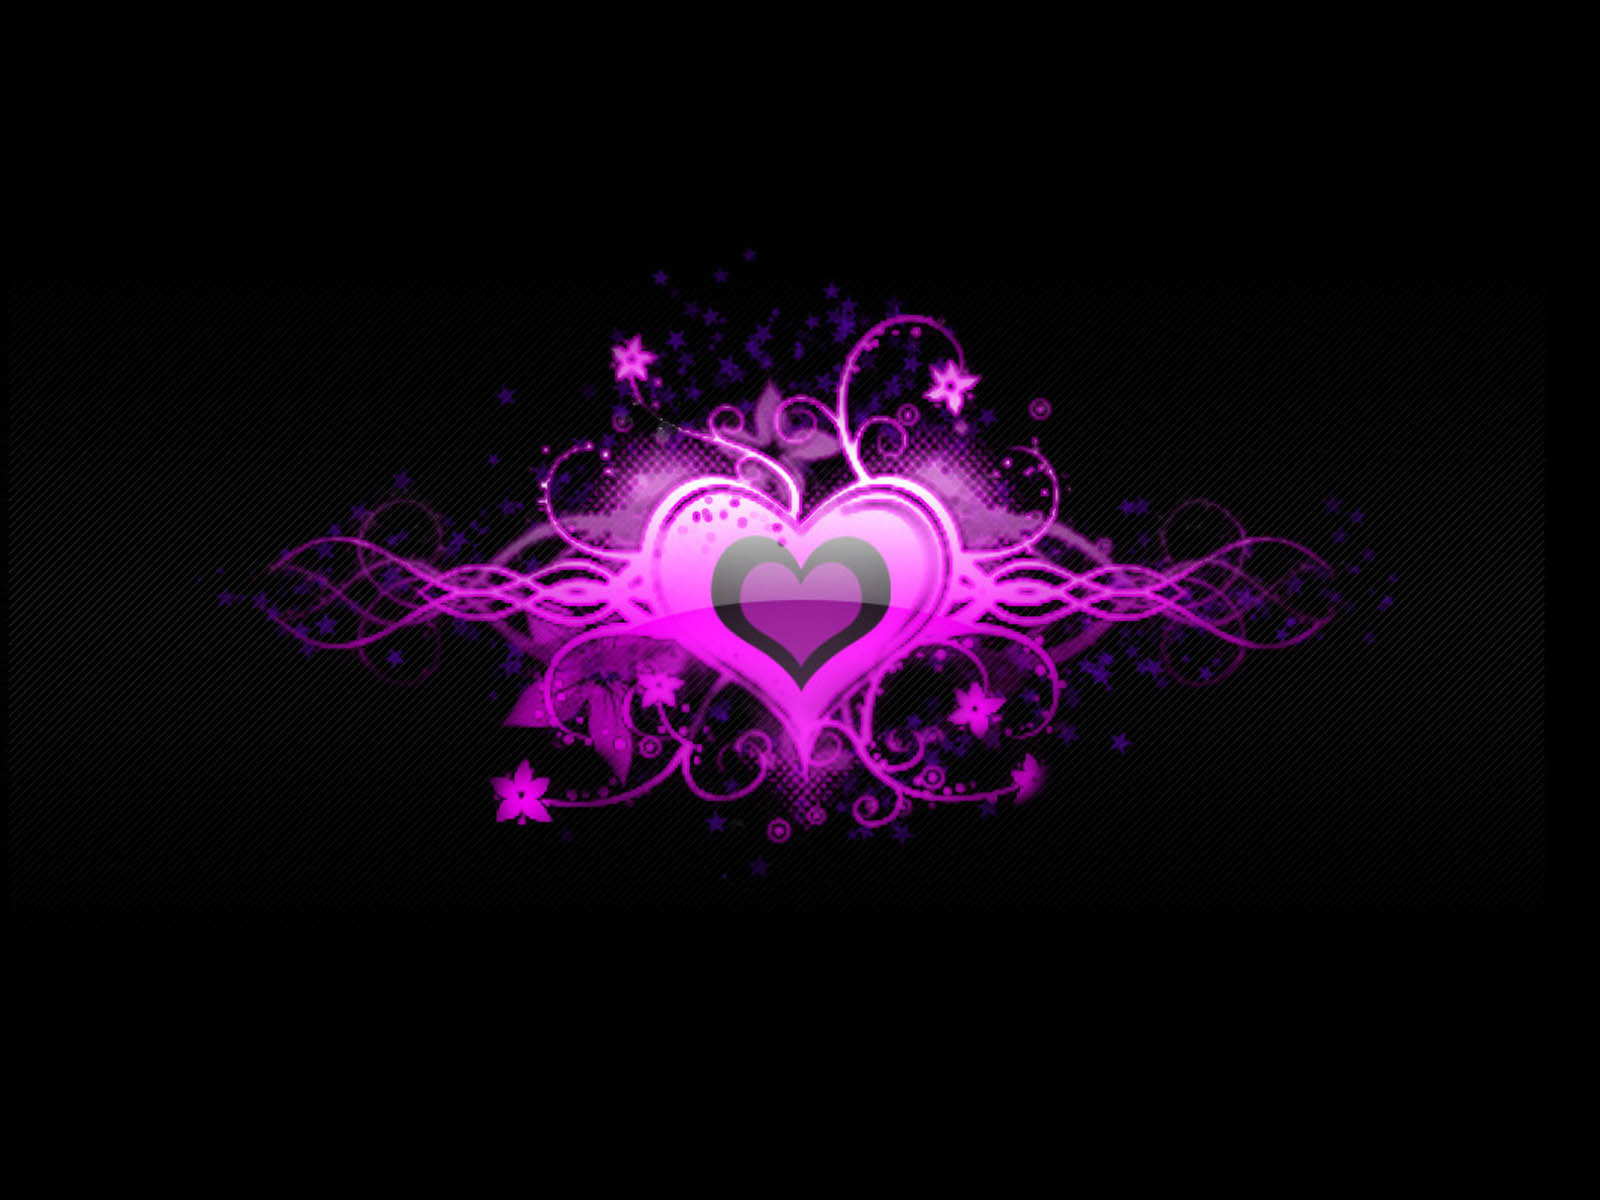 http://3.bp.blogspot.com/-LpFLEiSgyZc/UOc7szh9n4I/AAAAAAAACBk/5kXYO9yN6_Y/s1600/I+love+you+Heart+Picture+(6).jpg